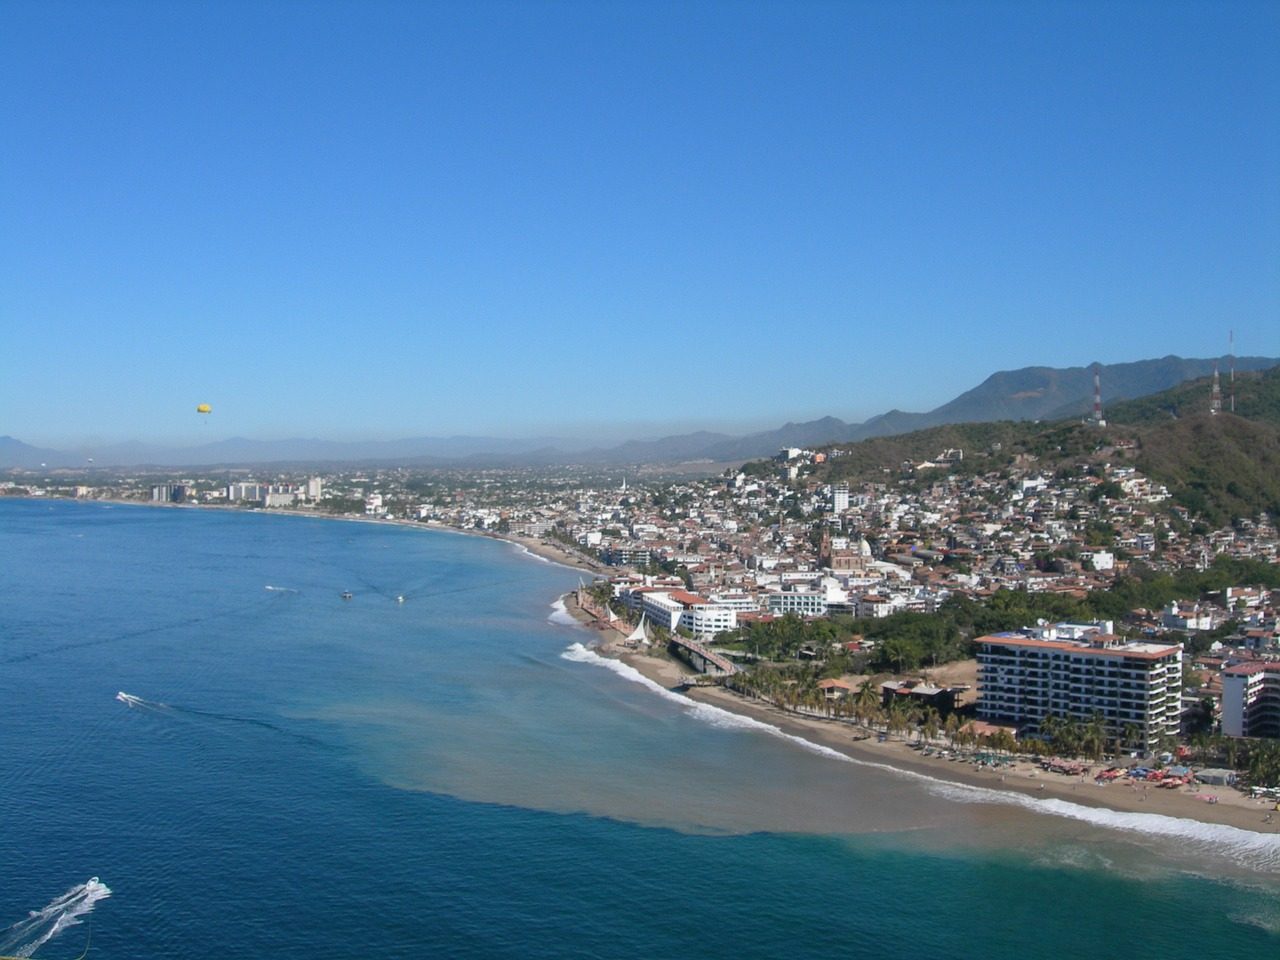 Puerto vallarta beach